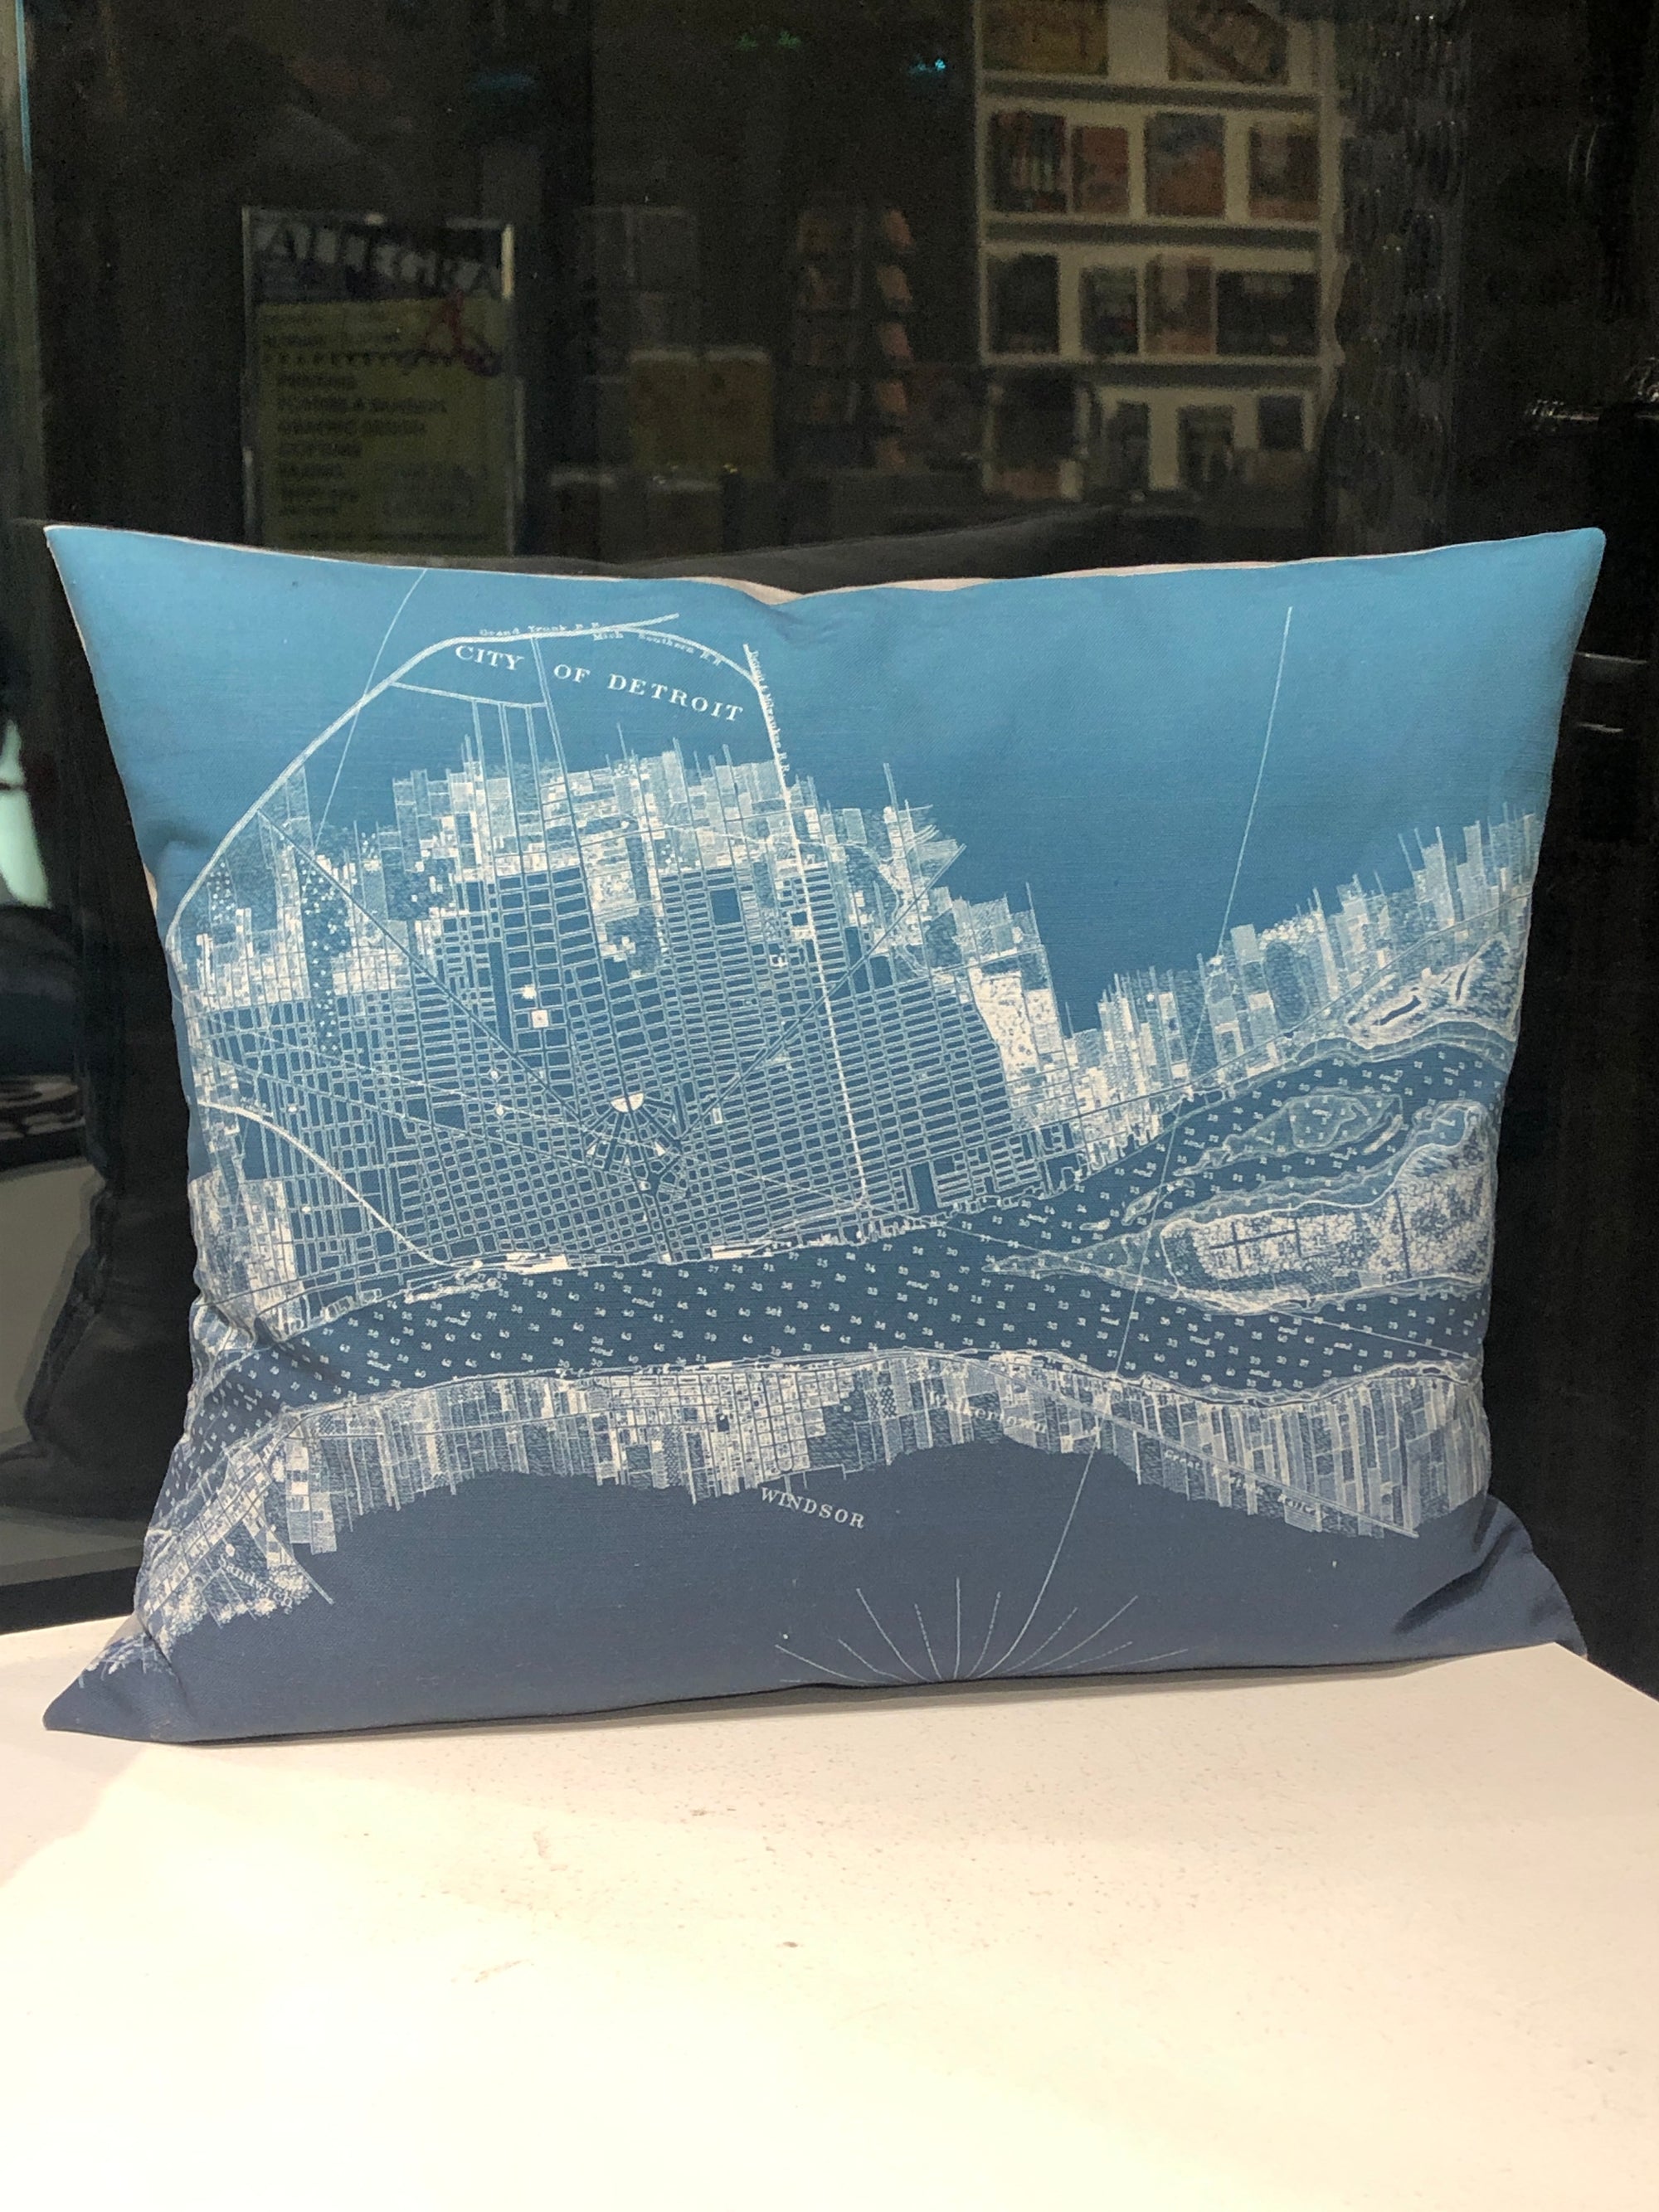 Hand-Made 16" x 13" Teal Detroit + Belle Isle Pillow Pillow   